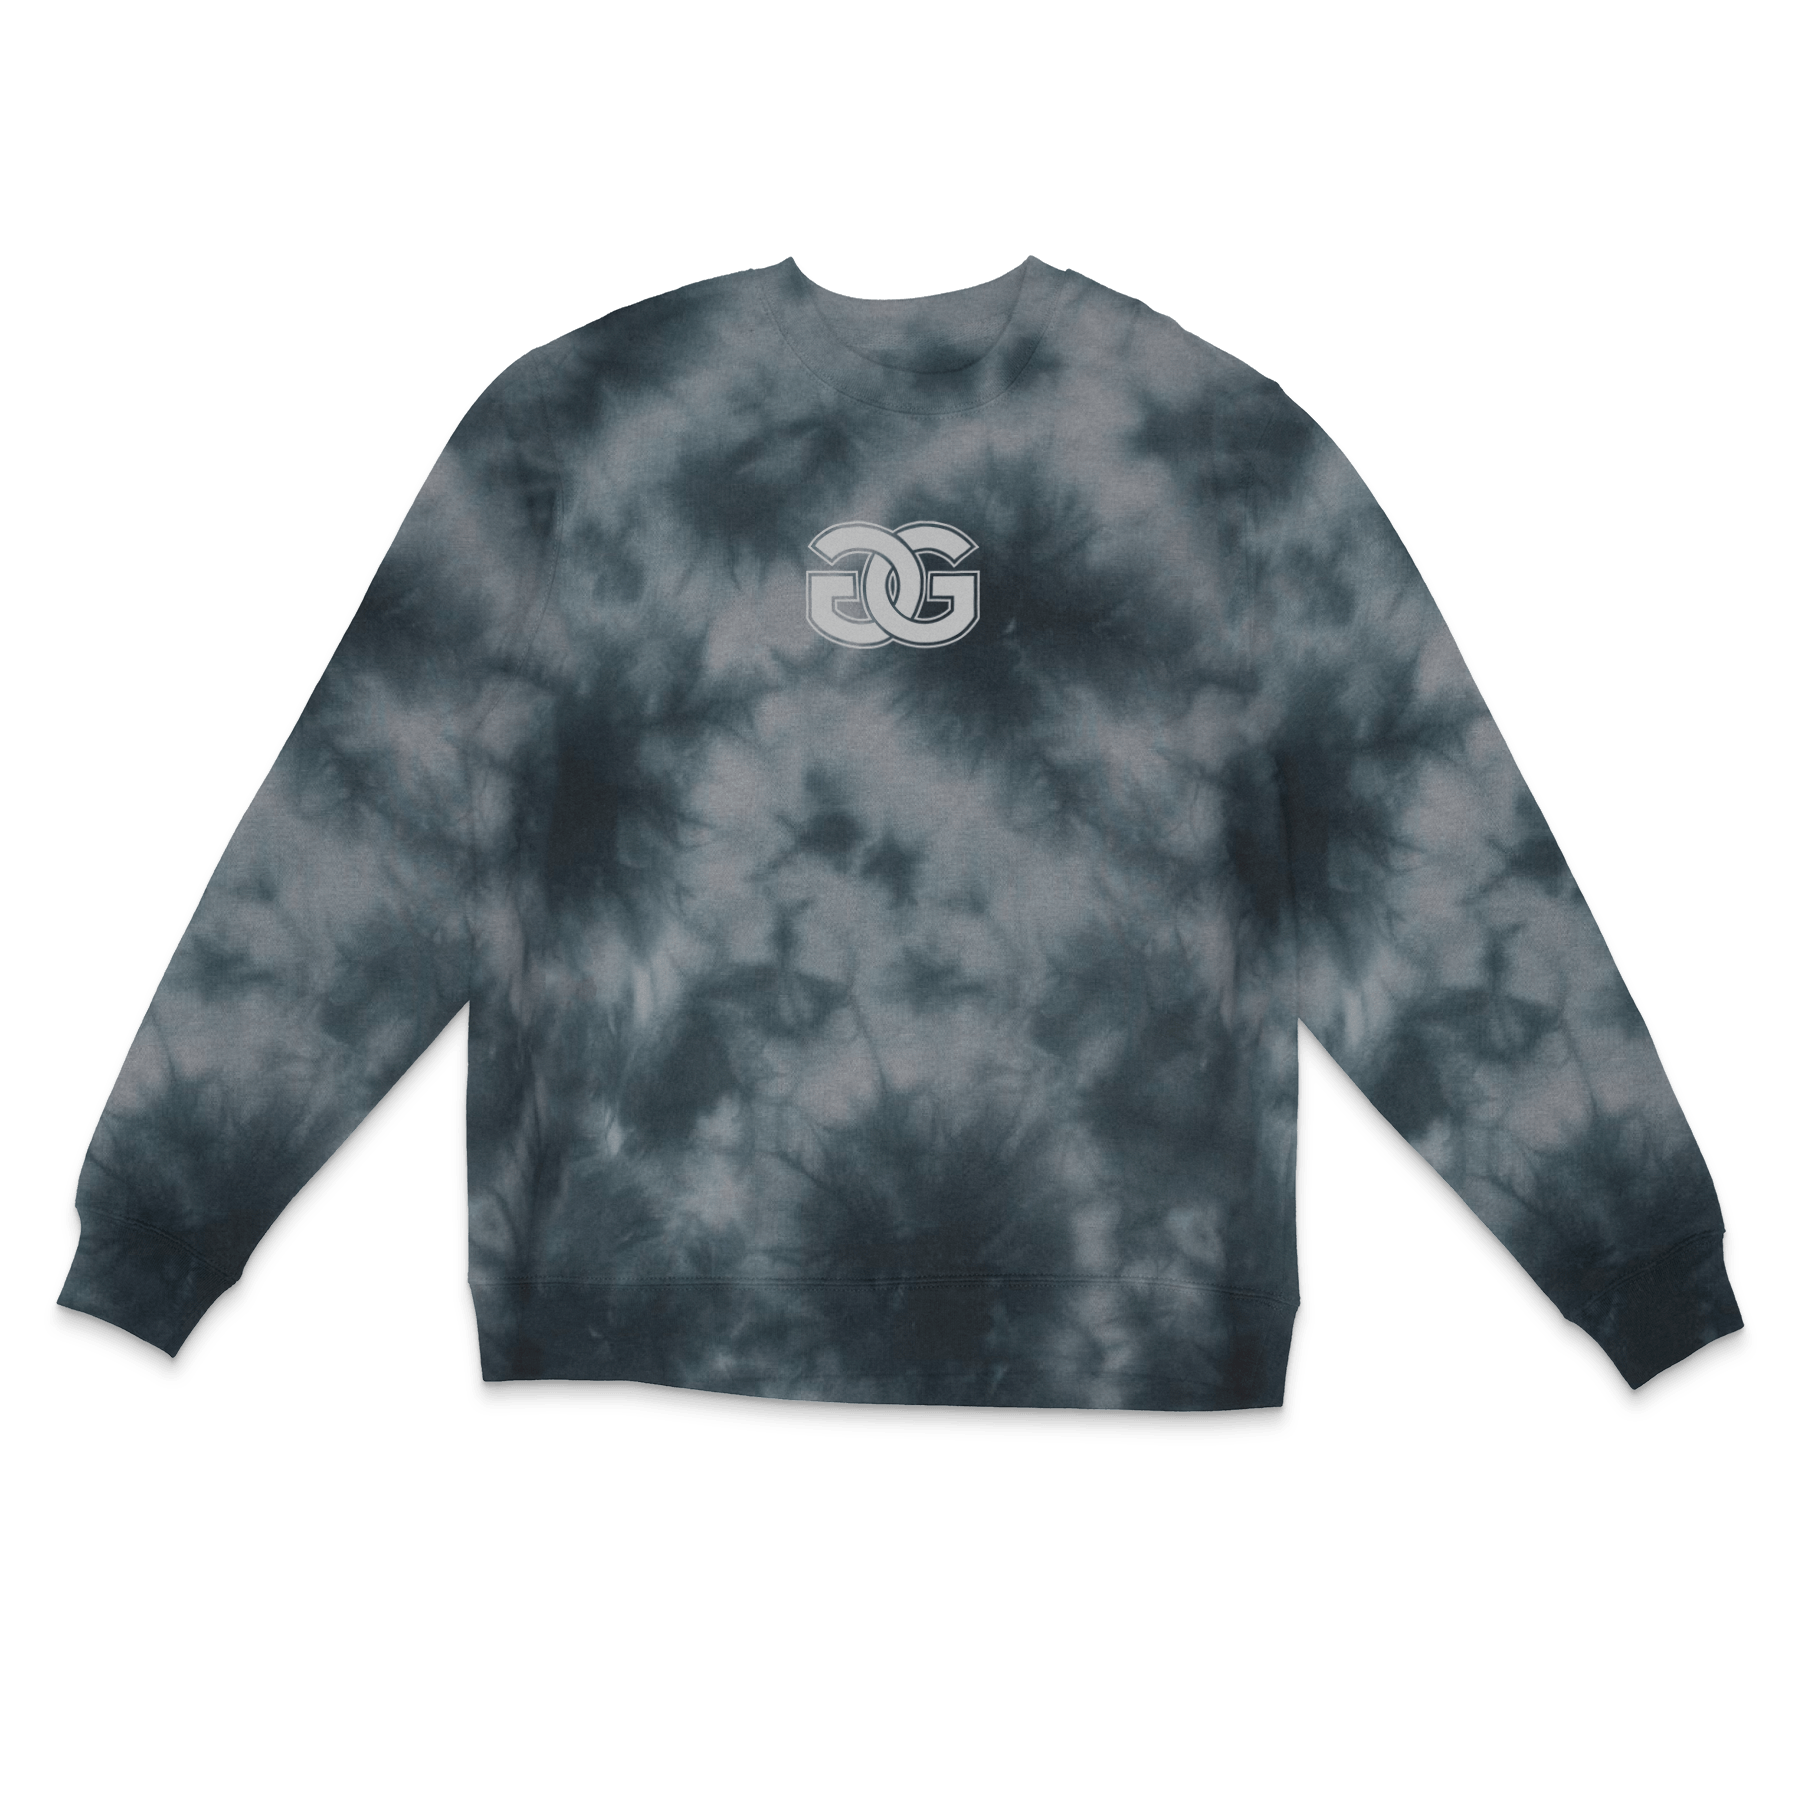 Golden Gate Unisex Midweight Tie-Dyed Sweatshirt - DSP On Demand